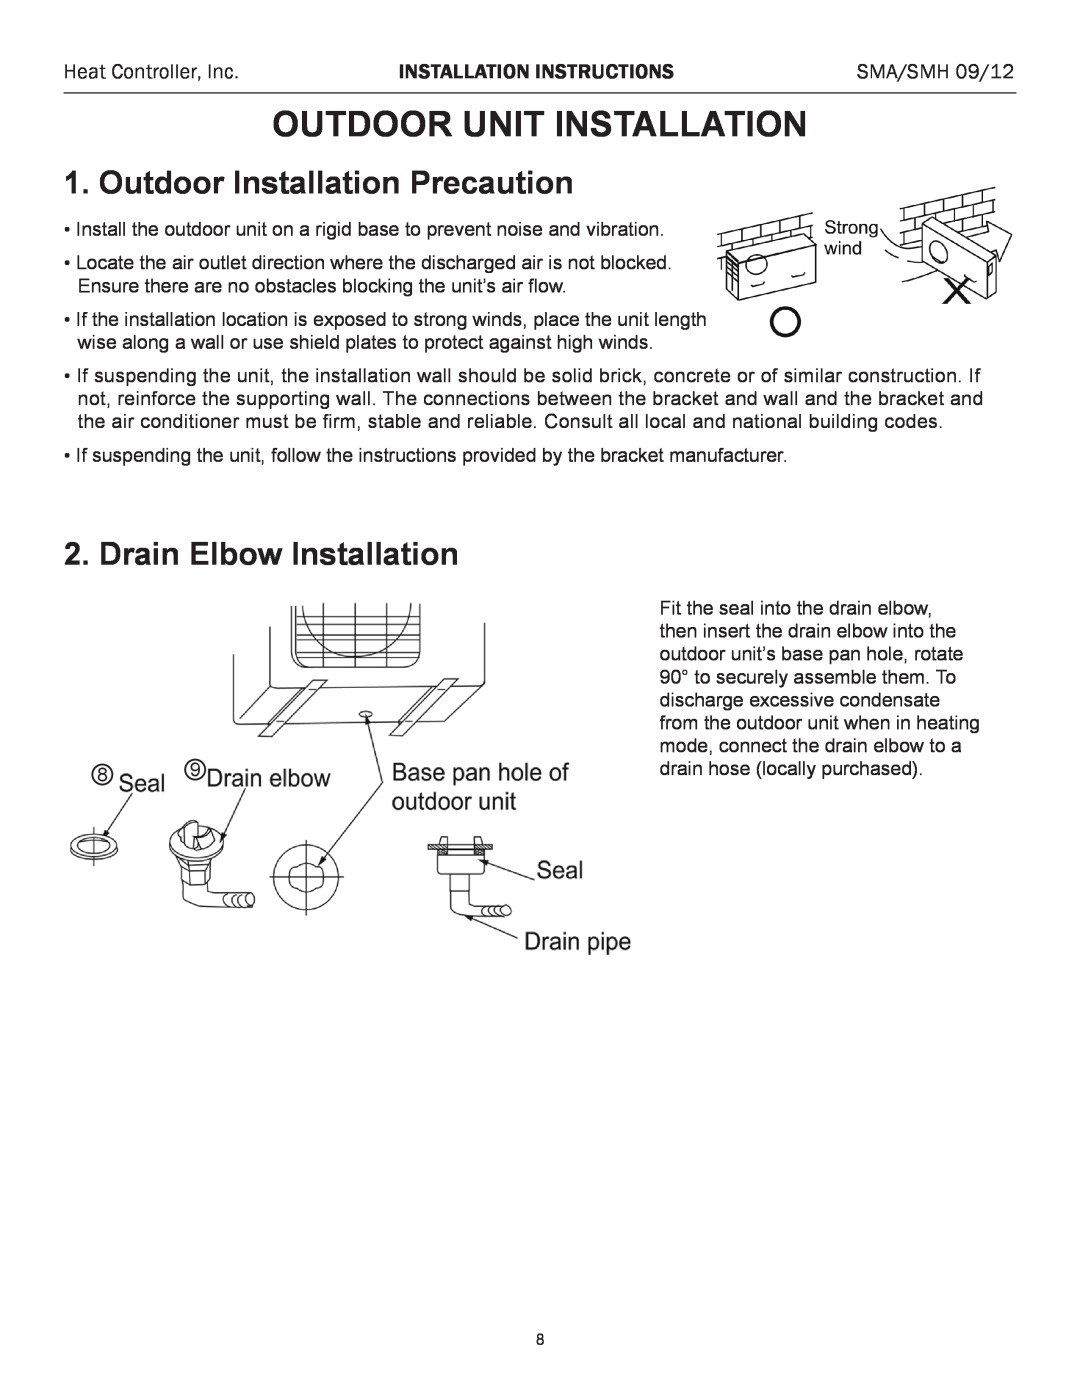 Heat Controller SMA 12 Outdoor Unit Installation, Outdoor Installation Precaution, Drain Elbow Installation, SMA/SMH 09/12 